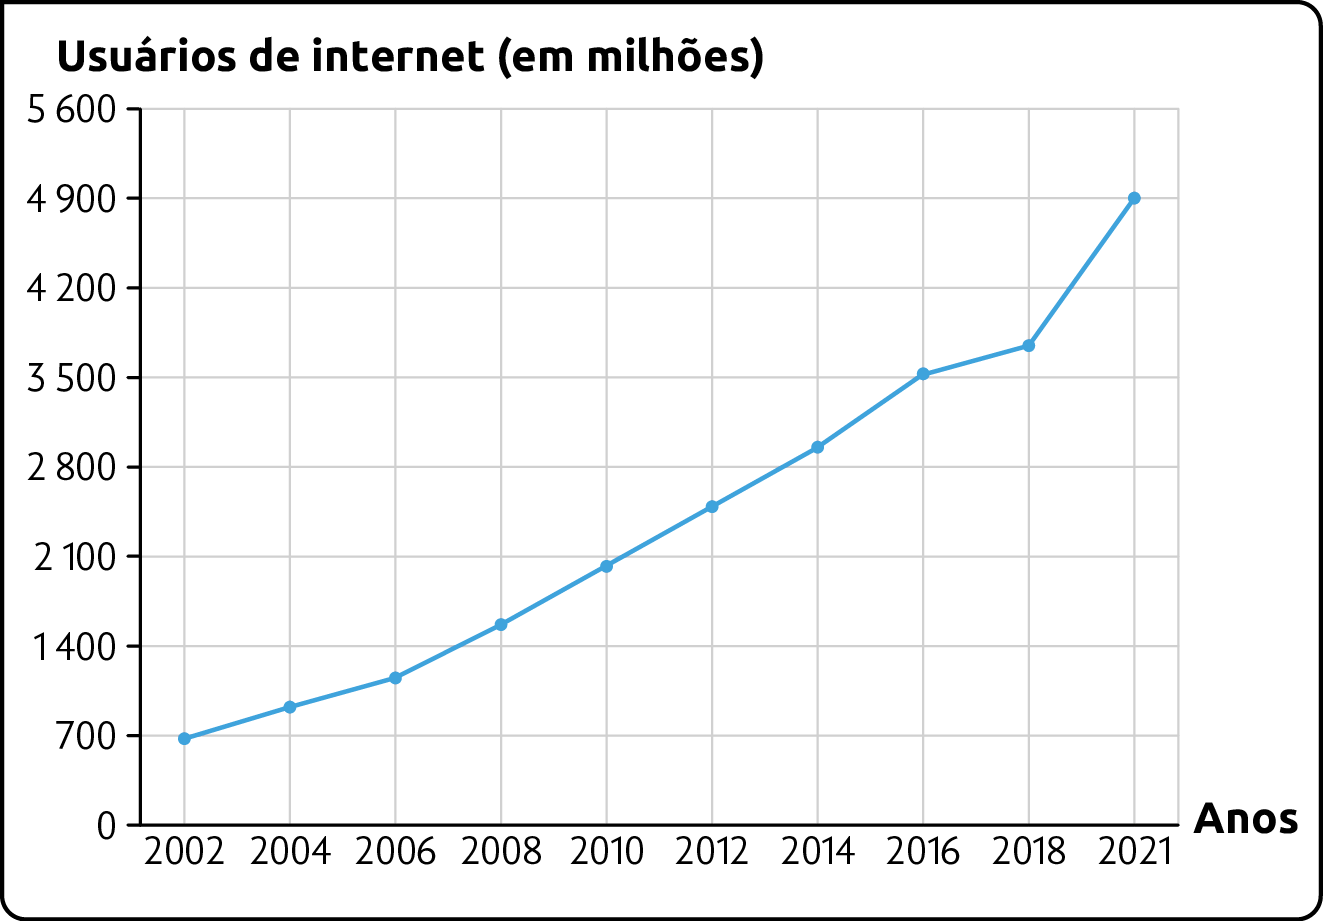 Gráfico. Evolução do número de usuários da internet no mundo (2002-2021). 
Usuários de internet (em milhões). 
Começando em 2002 com 700 milhões, aumentando gradativamente até 2016 atingindo 3.500, sofrendo um leve aumento em 2018, e um salto até 4.900 em 2021.